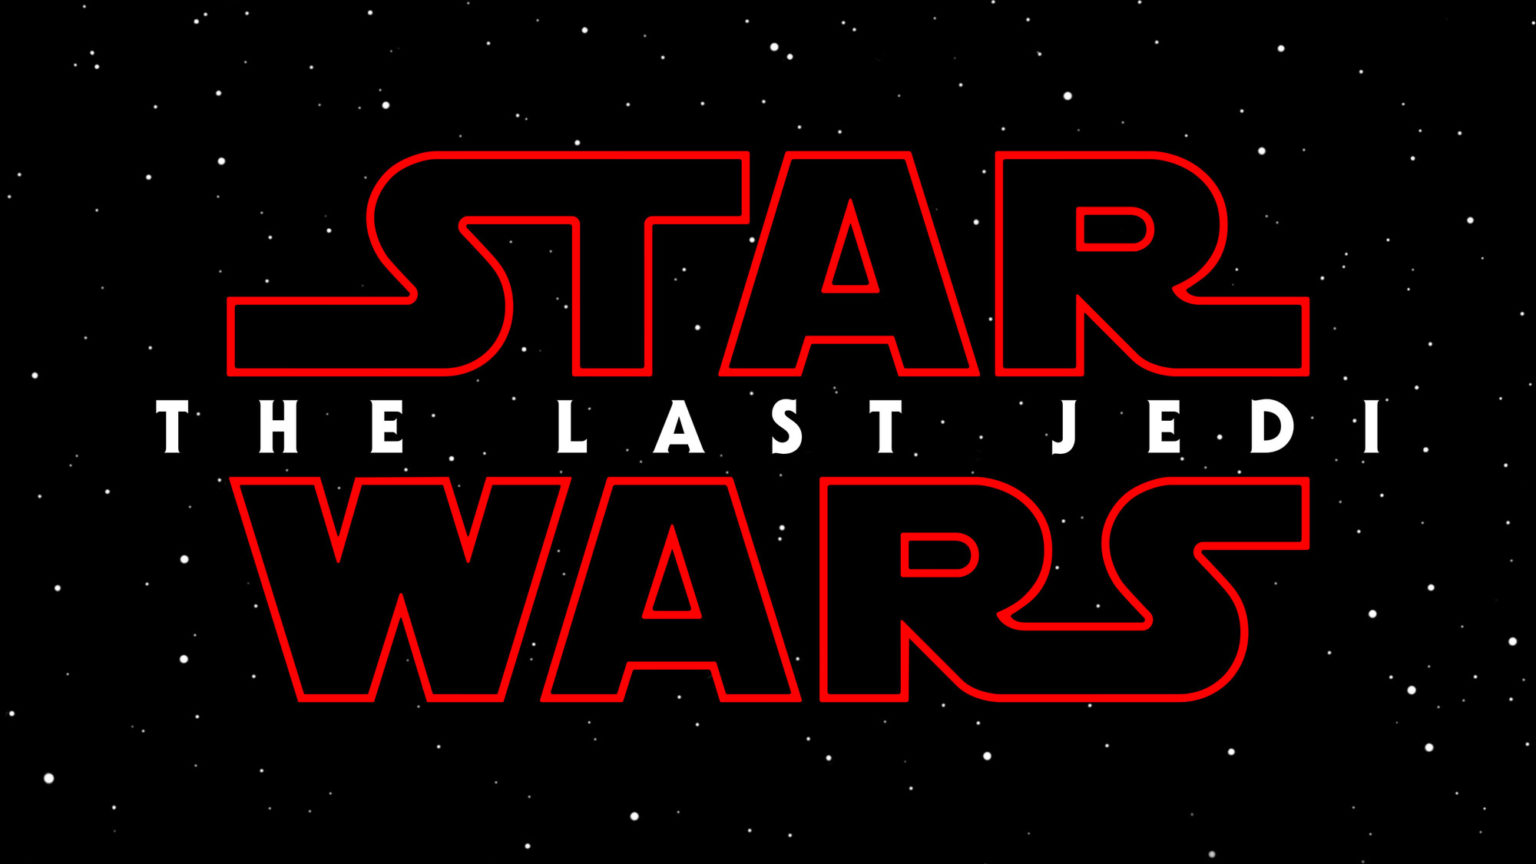 Star Wars : The Last Jedi